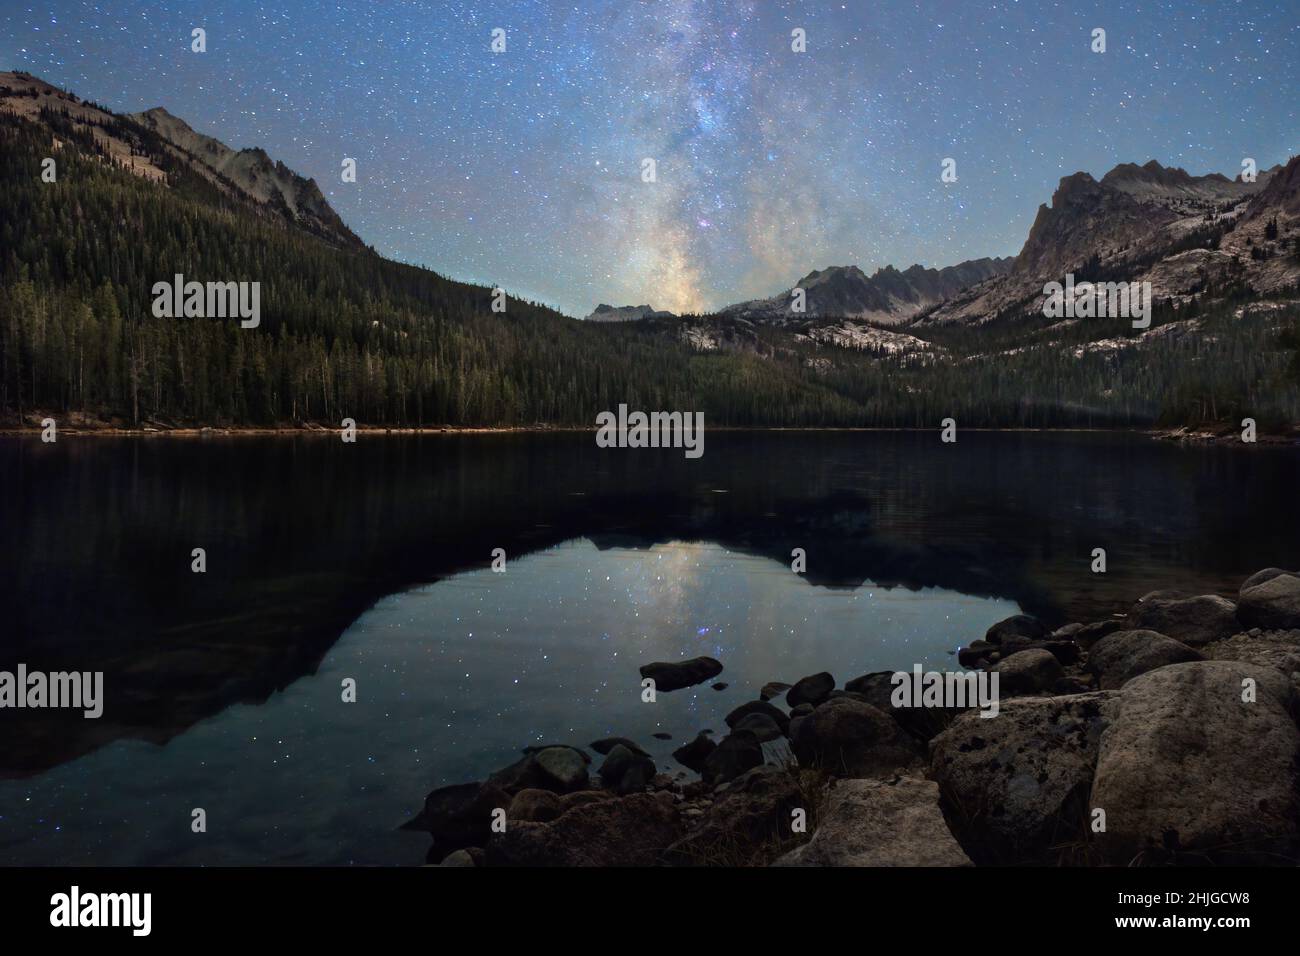 La galaxia de la Vía Láctea está suspendida sobre el Lago Infierno Roaring de Idaho, en el Bosque Nacional Sawtooth. Foto de stock